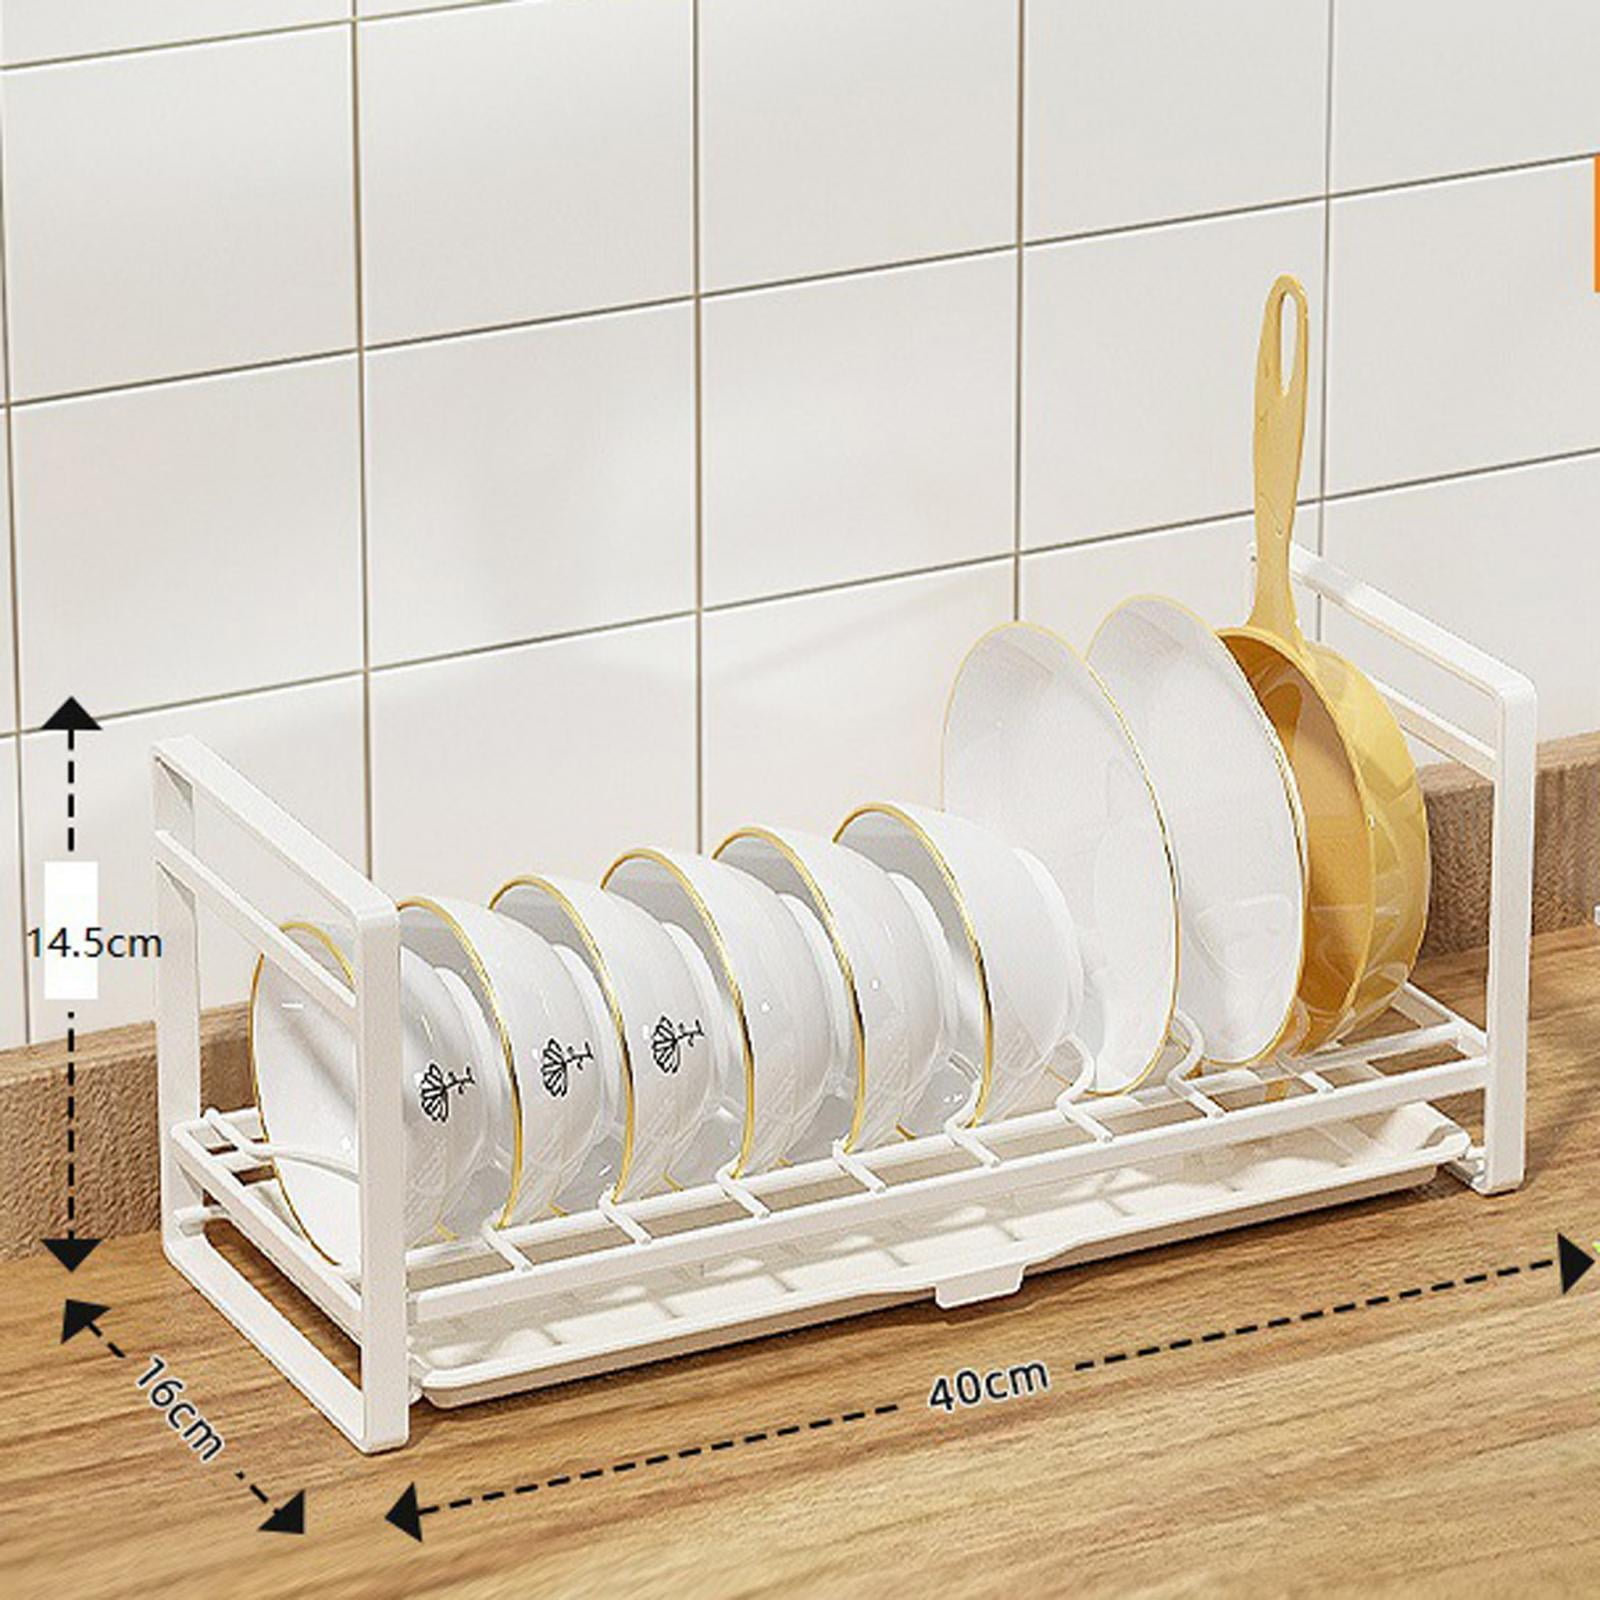  G&GOnline Paper Plate Holder Storage Organizer Rack Dispenser  Mount Under Cabinet RV Shelf: Home & Kitchen